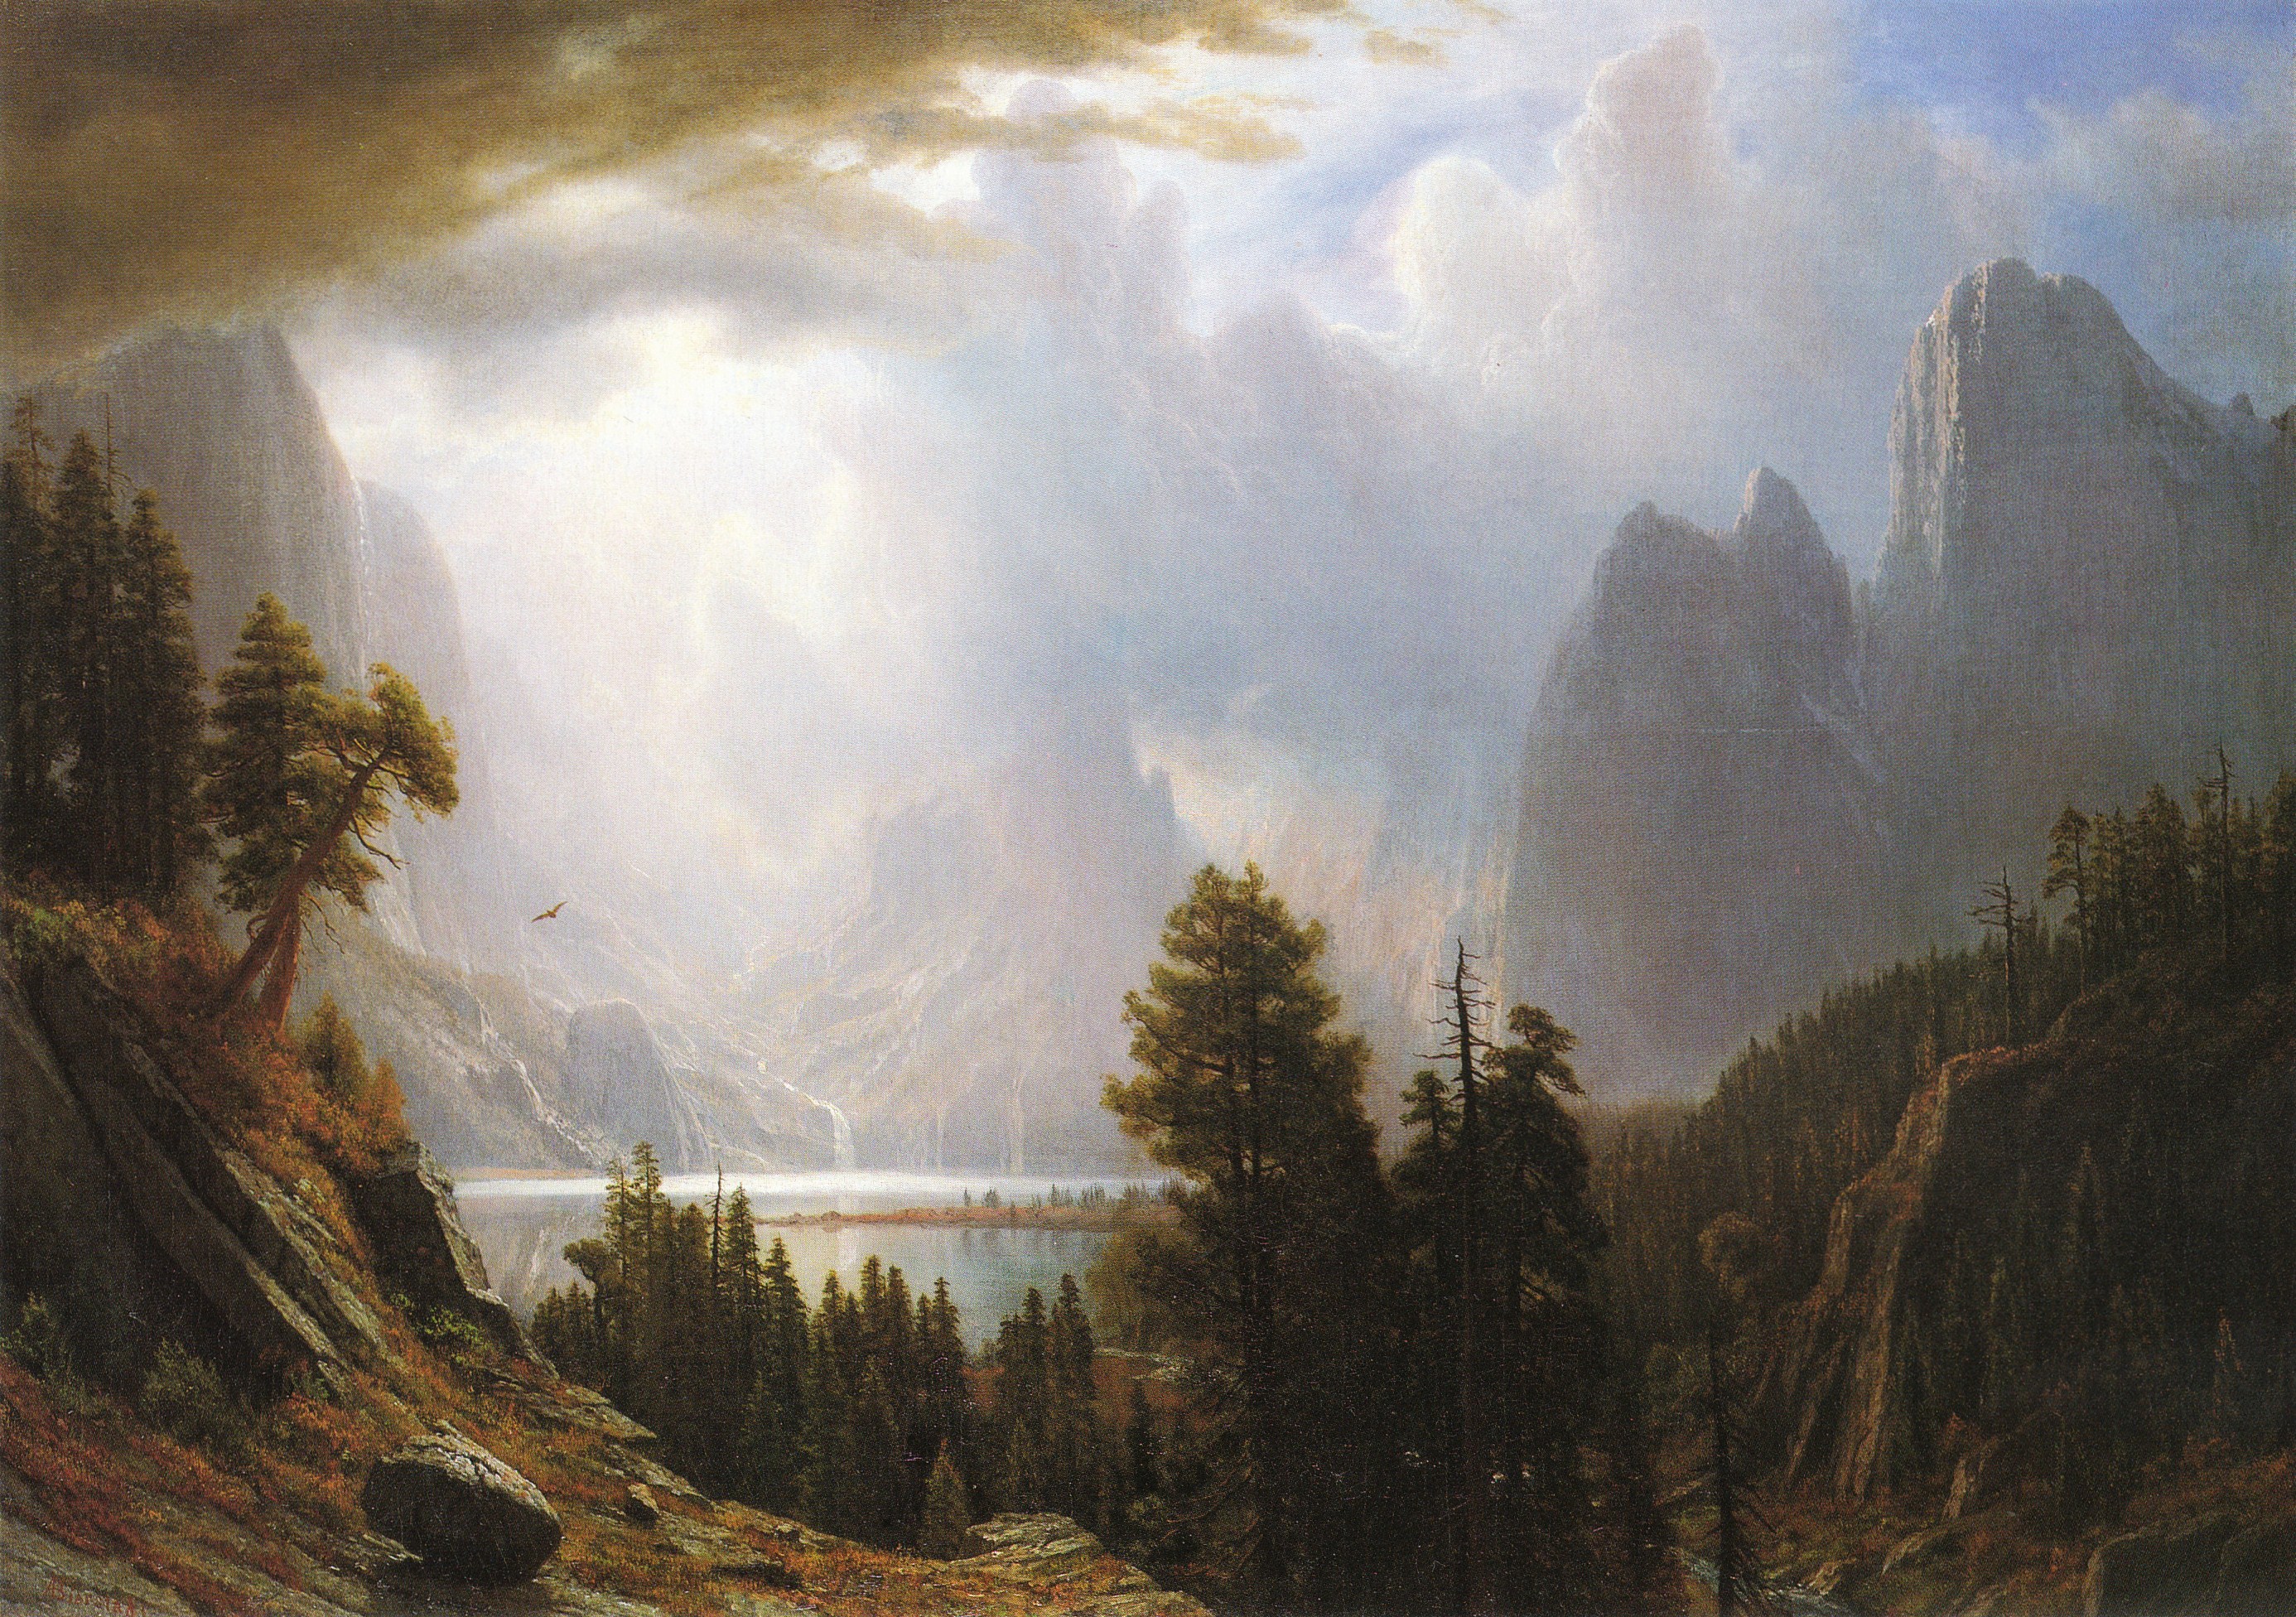 Художники больших картин. Альберт Бирштадт (1830 - 1902) – американский художник. Albert Bierstadt художник. Горные пейзажи Альберта Бирштадта. Американский художник пейзажист Альберт Бирштадт.